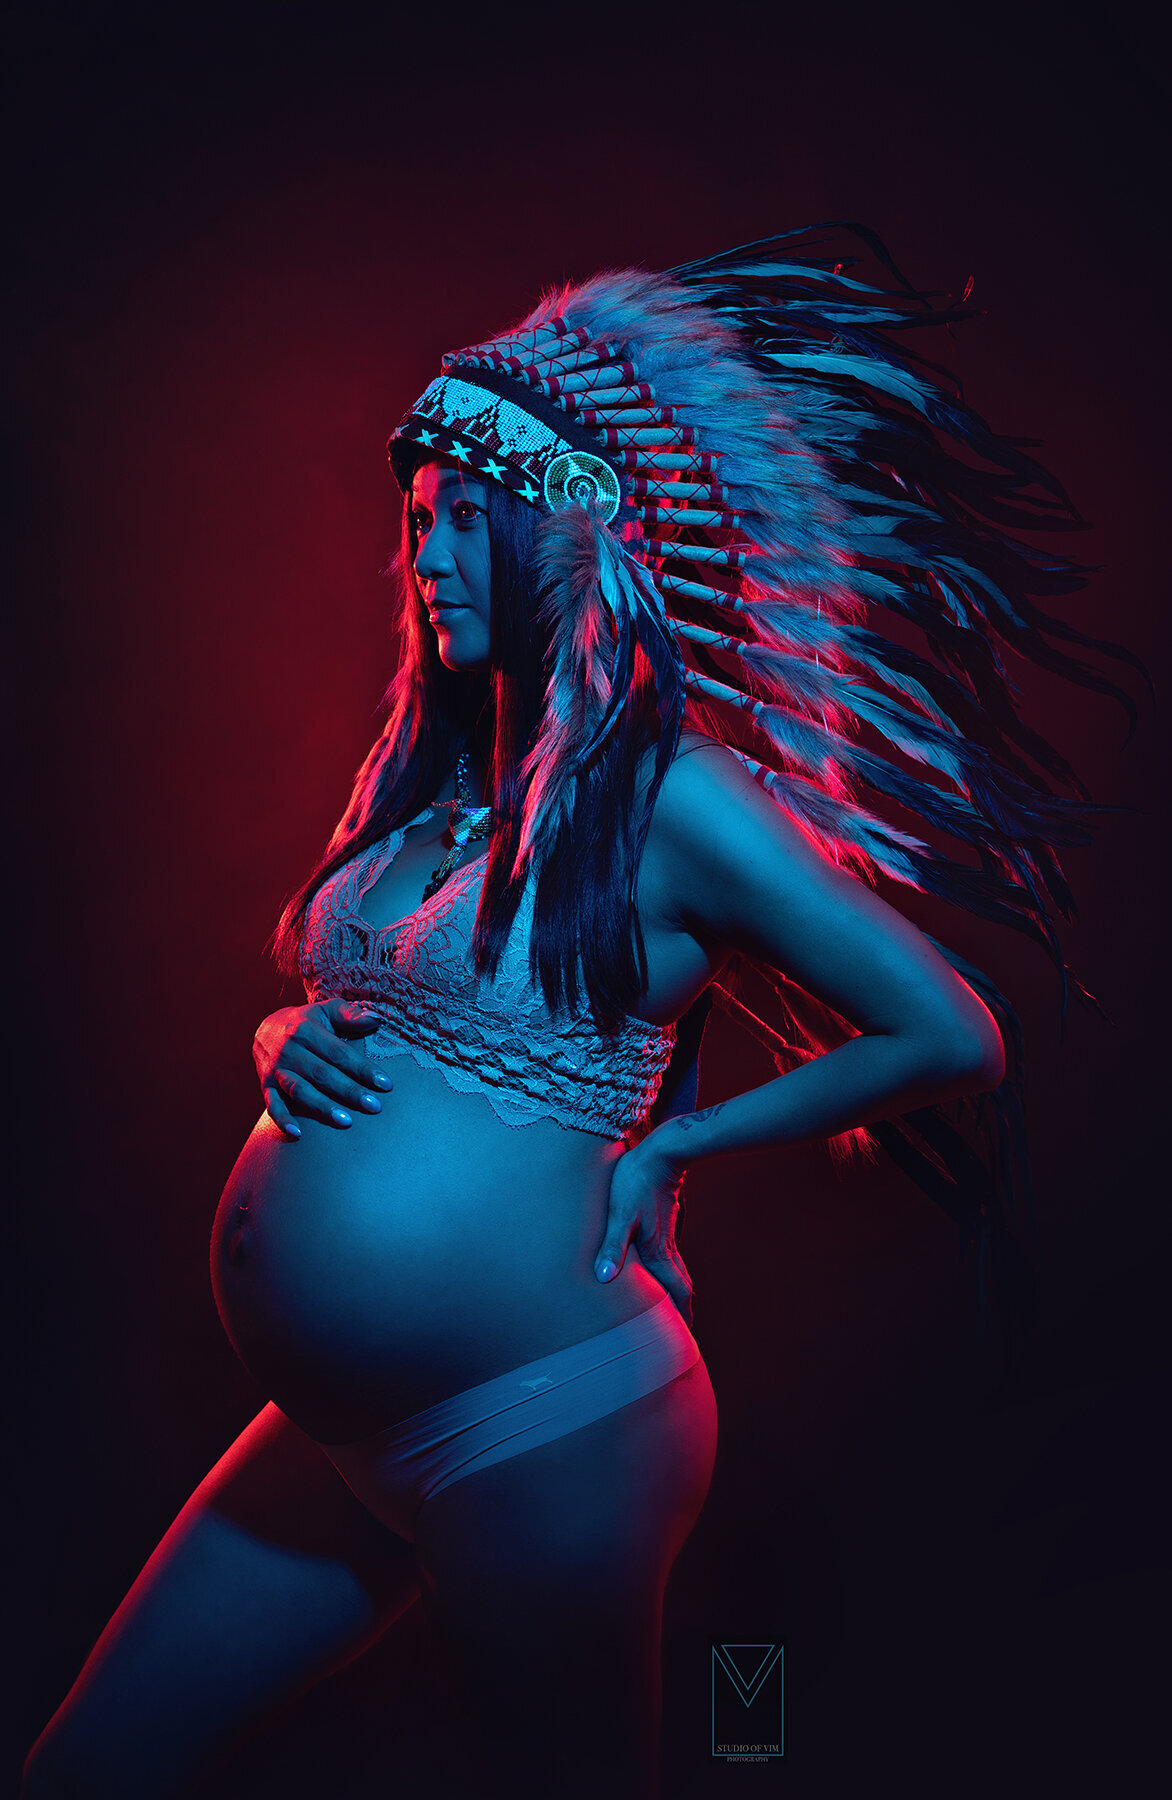 las vegas maternity photographer neon portrait